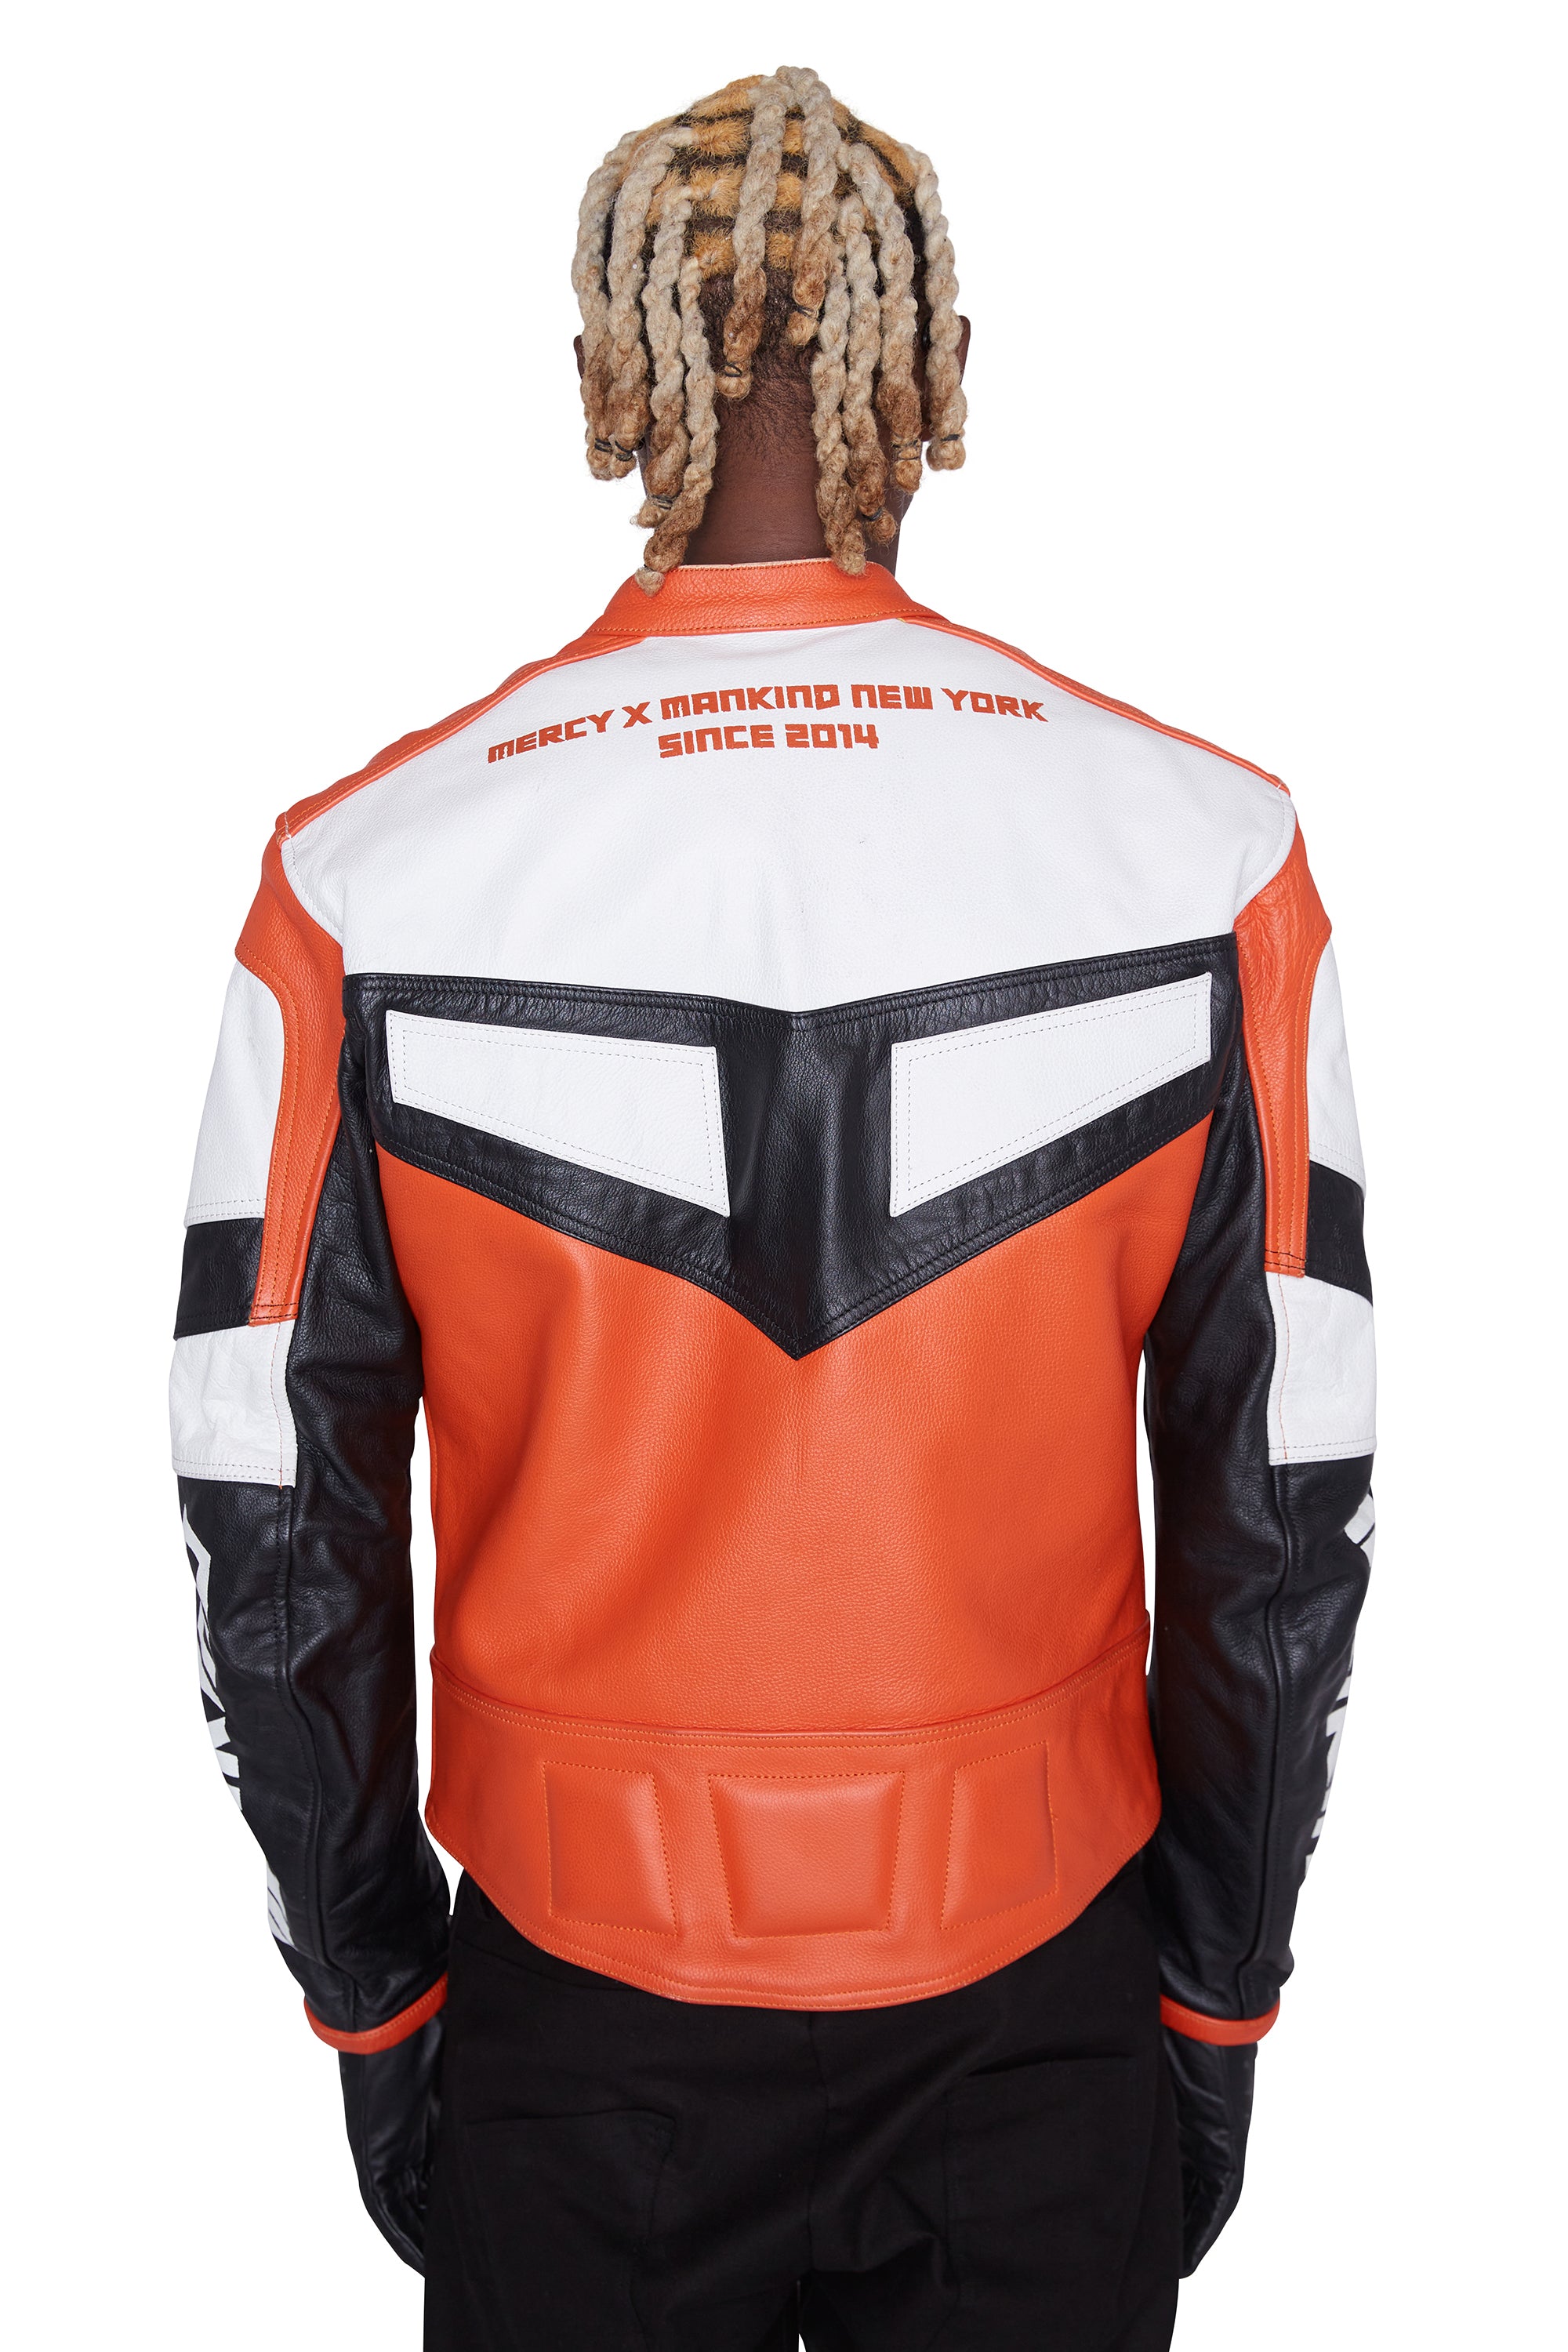 Moto Leather Racer Jacket (Desert Sunset)